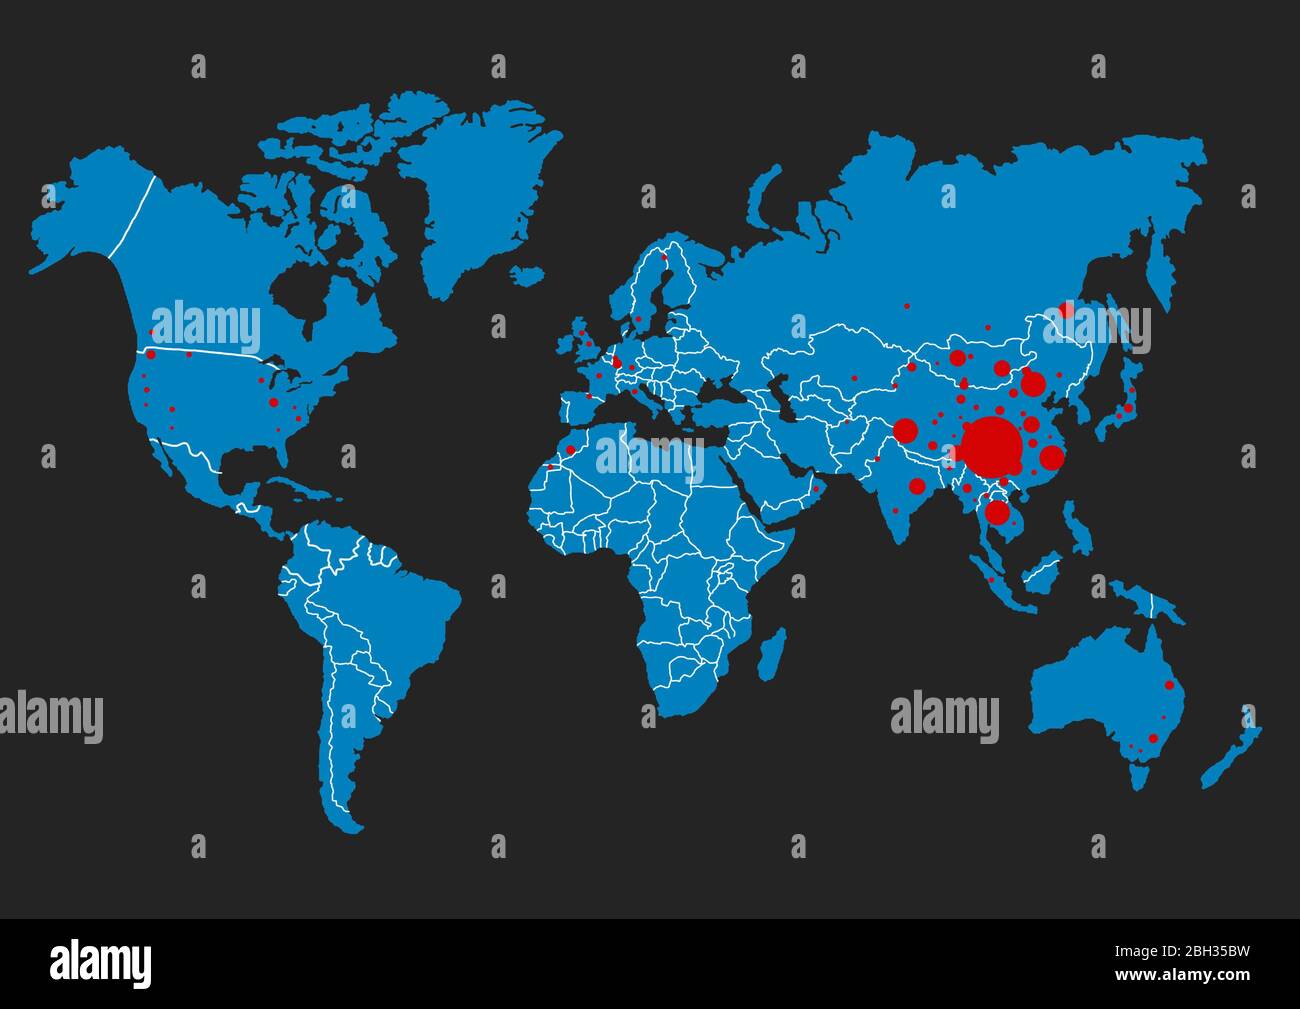 Coronavirus à Wuhan Chine. La carte rouge de la chine sur la carte du monde  avec des points Photo Stock - Alamy